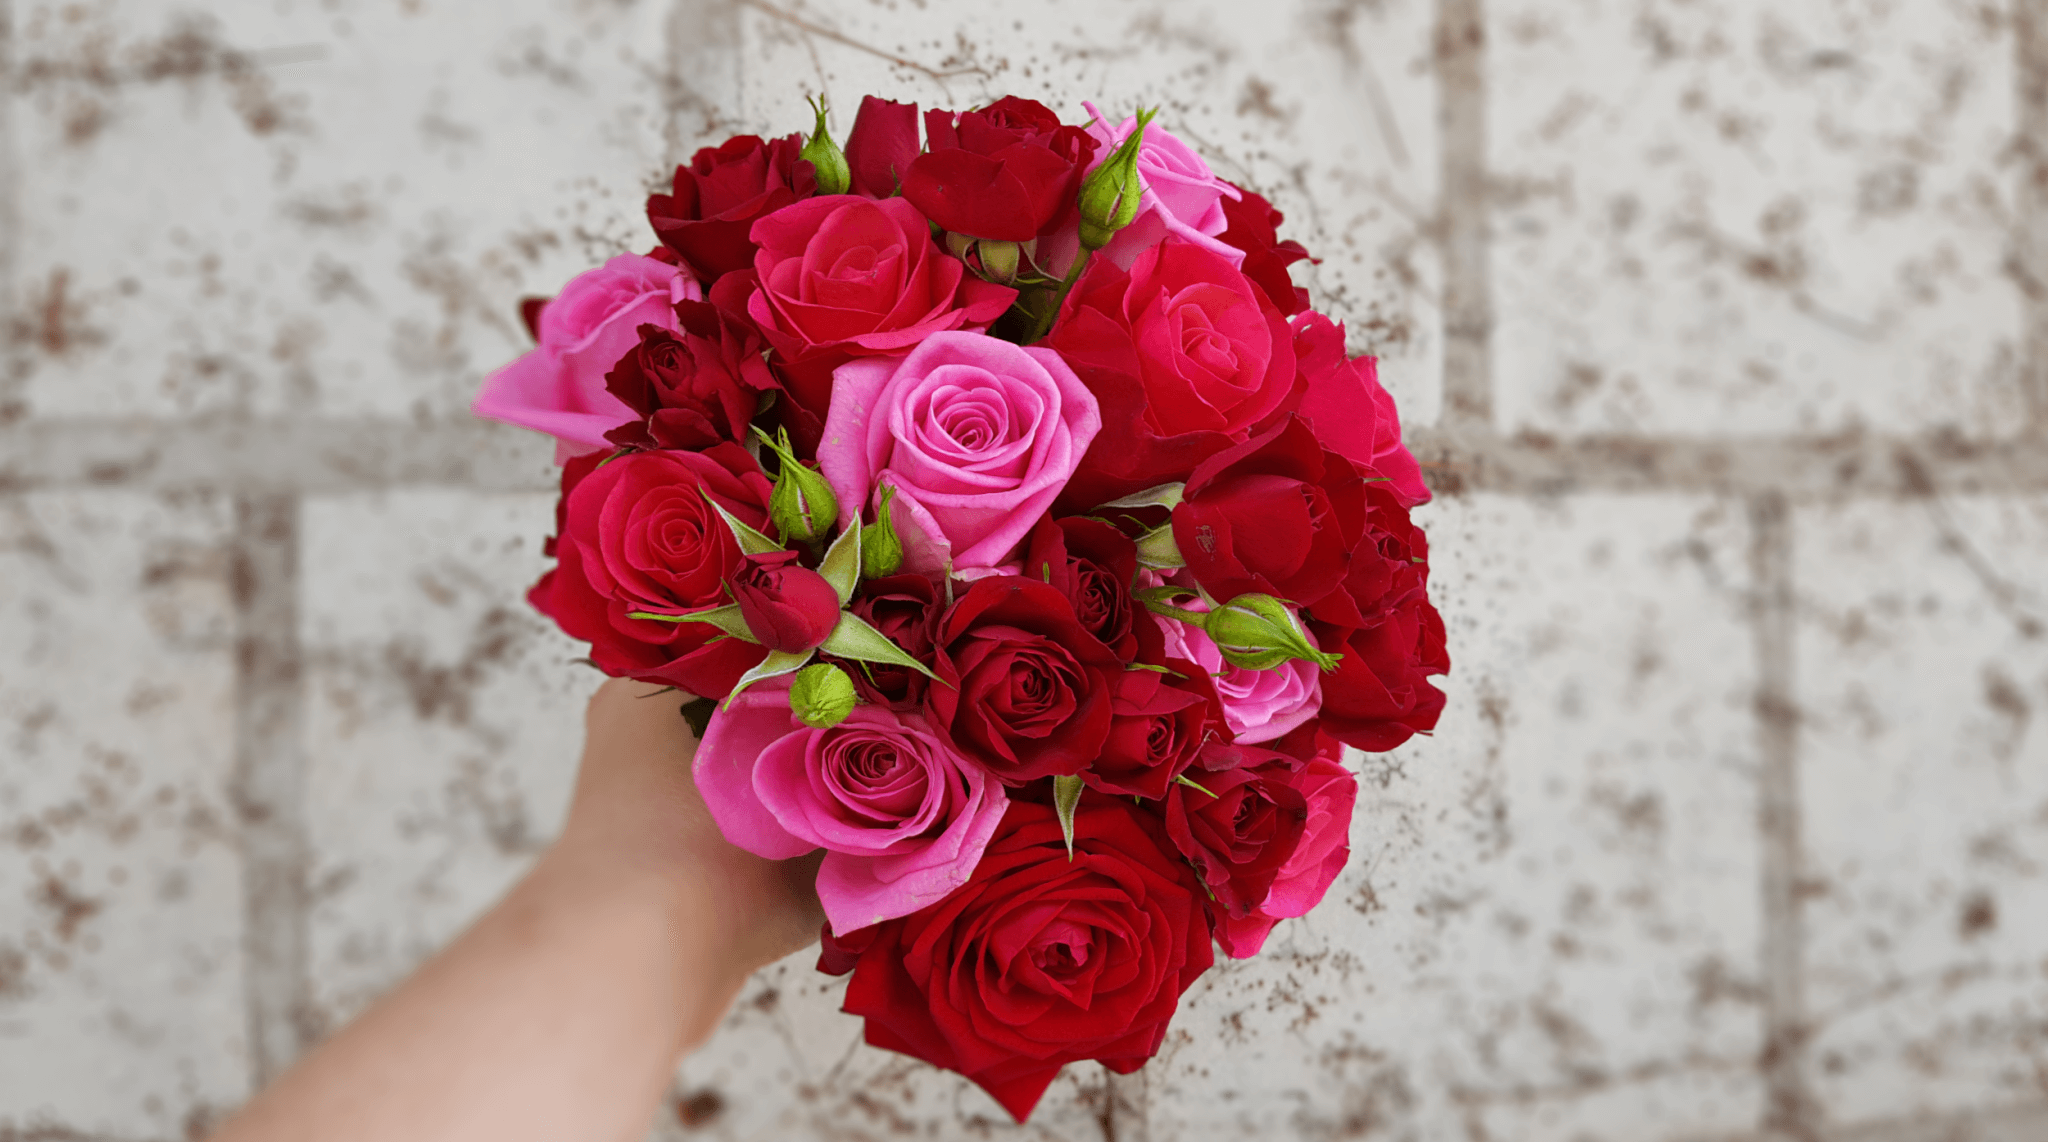 Wunderbar romantischer Brautstrauß mit roten Rosen Kopf an Kopf